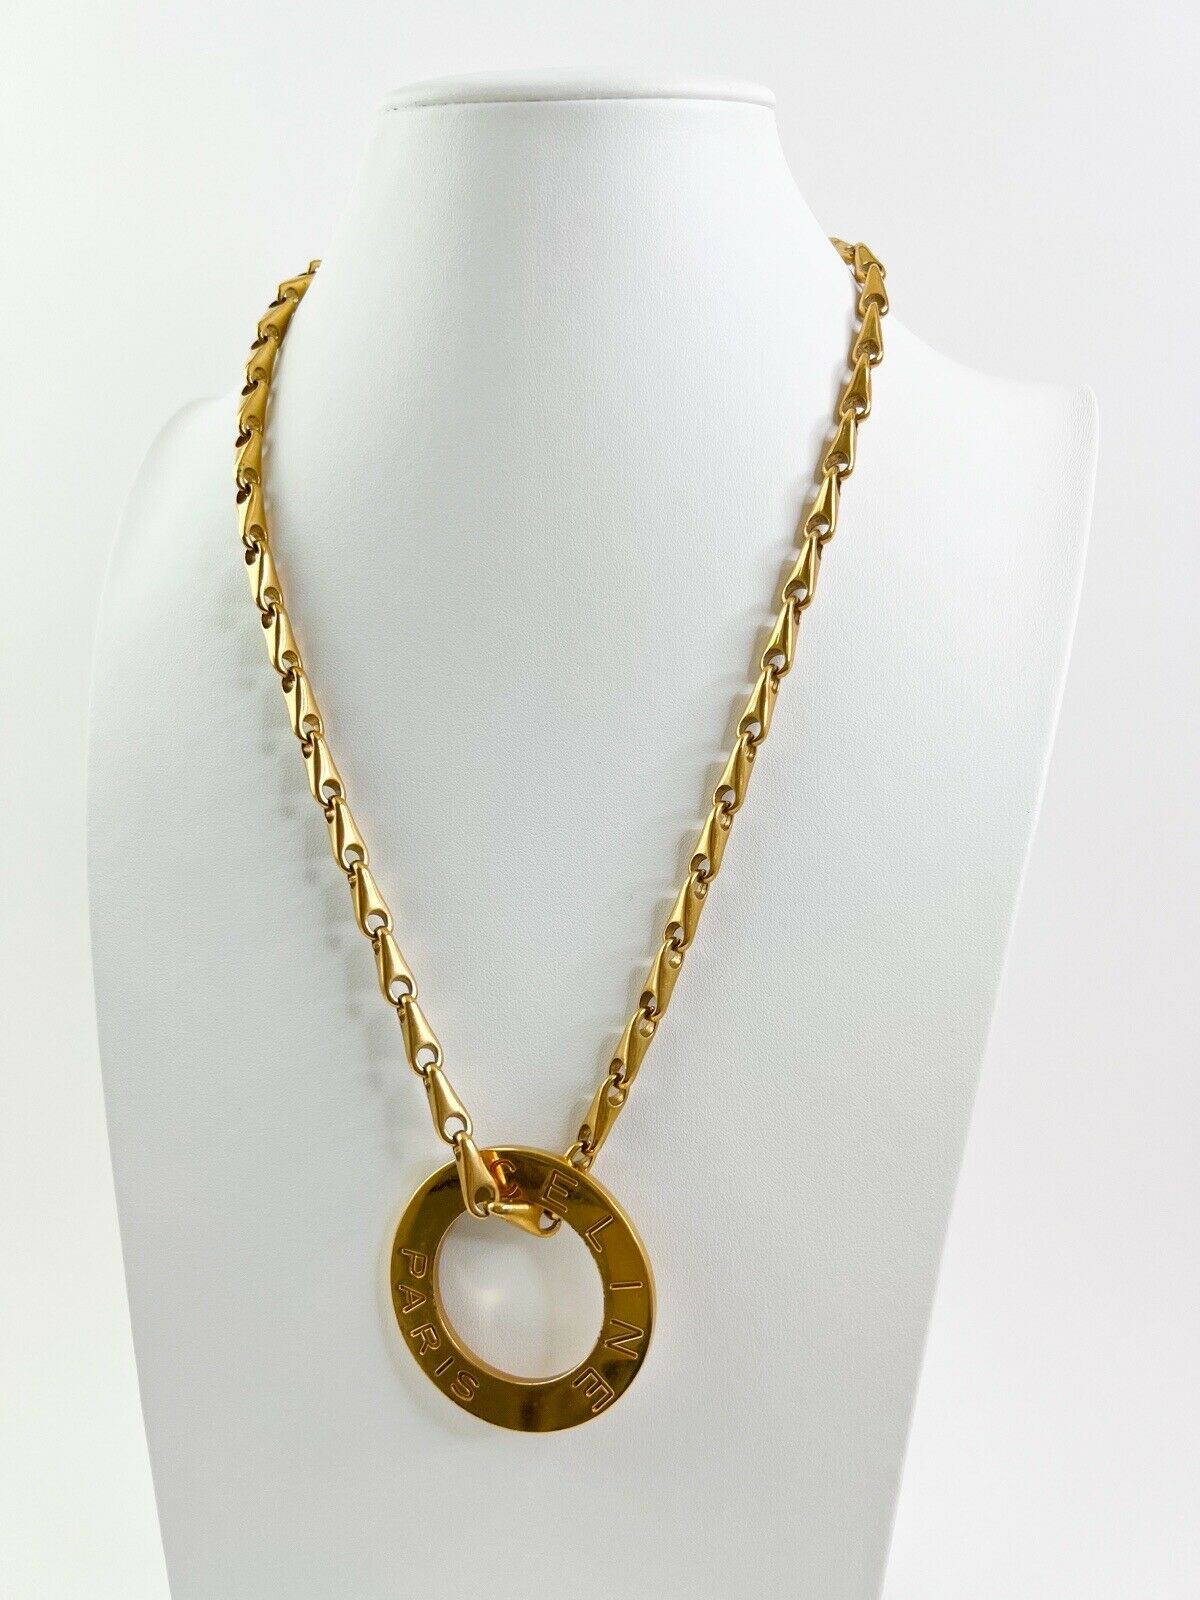 Celine Paris Vintage Necklace Gold Pendant